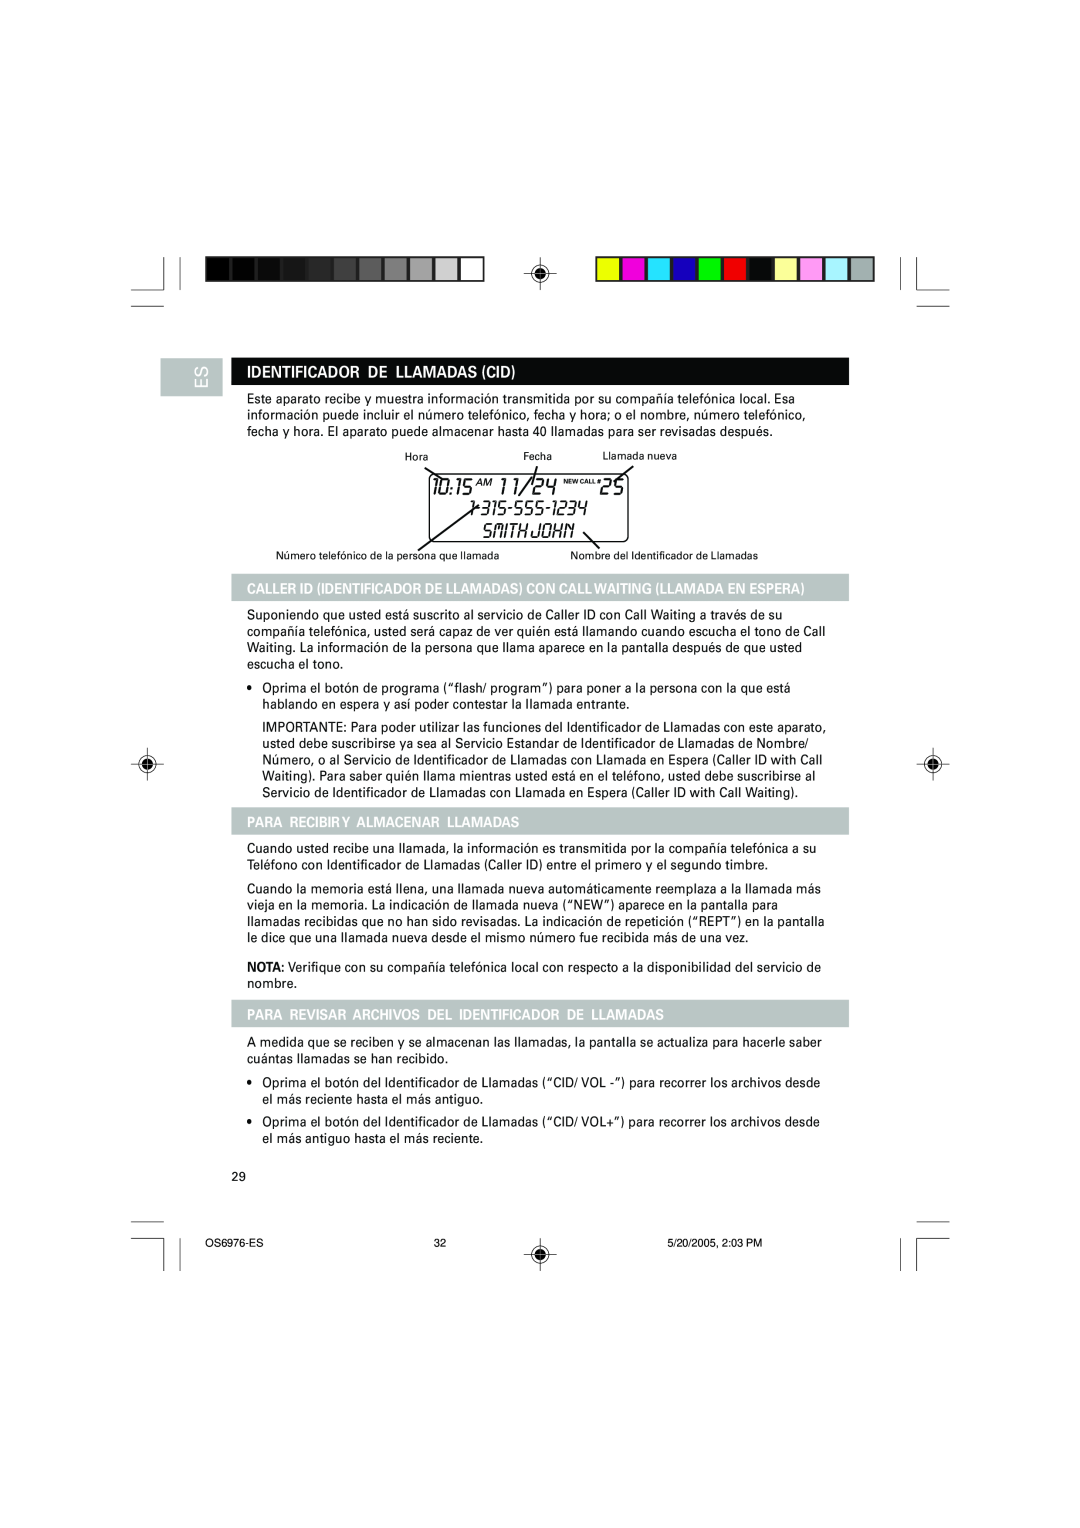 Oregon Scientific OS6976 user manual Identificador De Llamadas Cid, Para Recibir Y Almacenar Llamadas, Smith John 